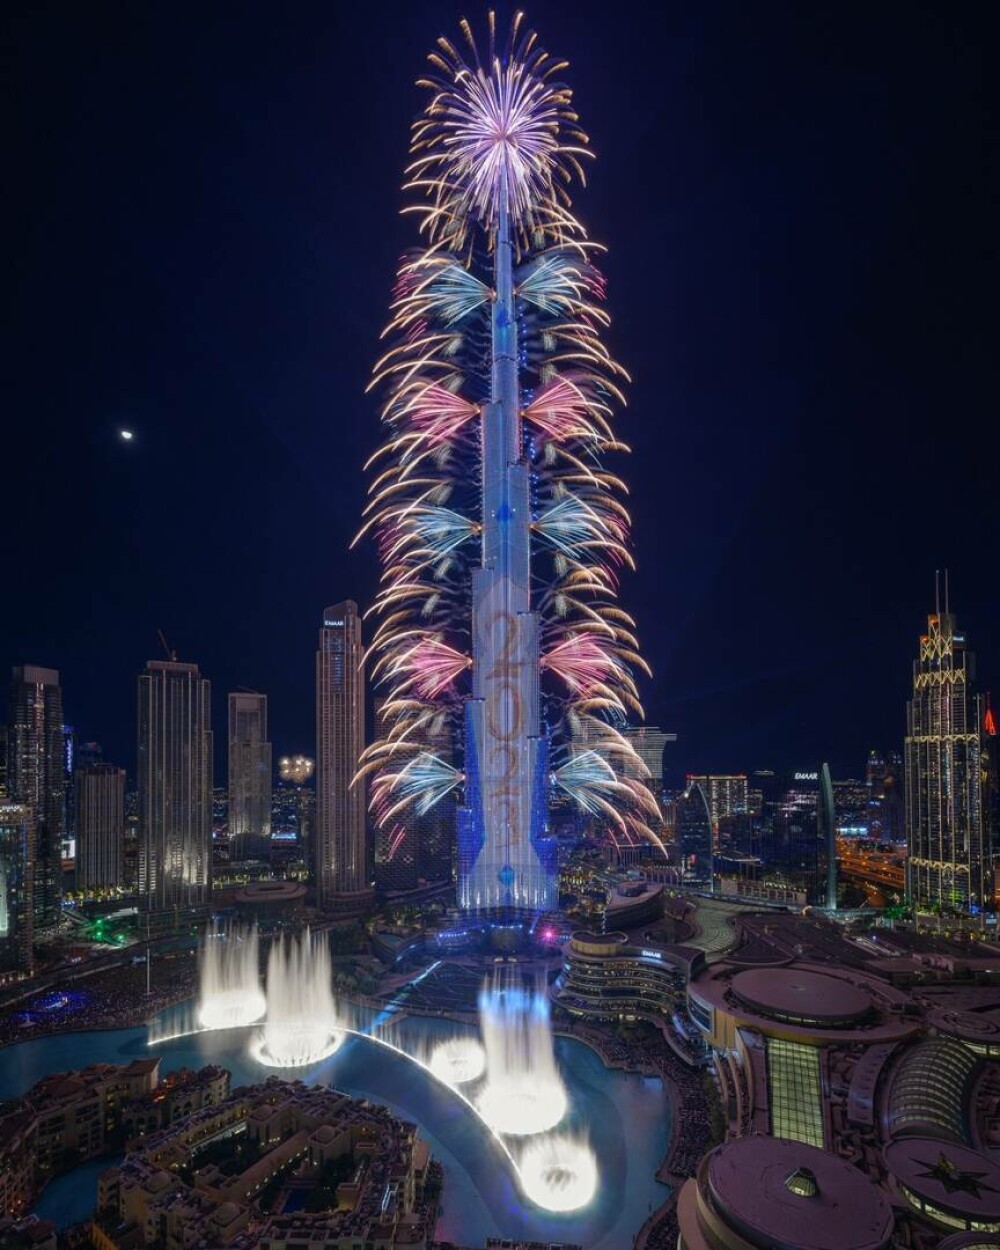 13 ani de la inaugurarea celei mai mari clădiri din lume - Burj Khalifa. Imagini de atunci și de acum | GALERIE FOTO - Imaginea 18